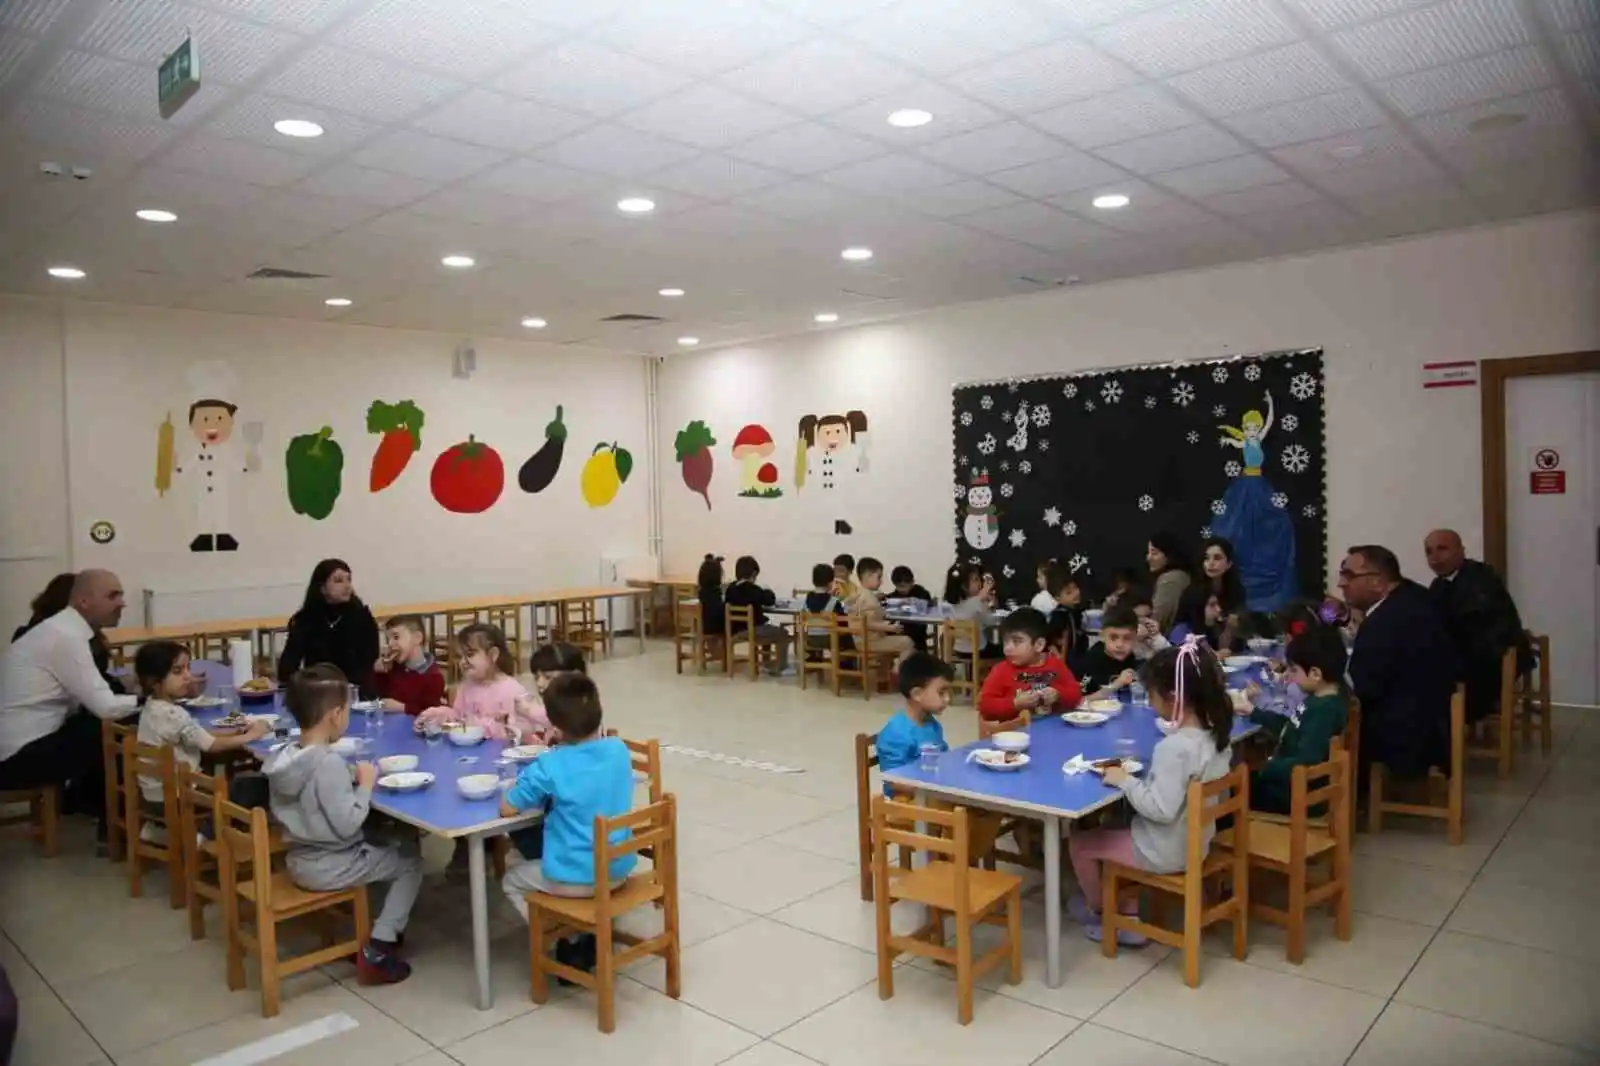 Tunceli’de okullarda ücretsiz yemek hizmeti başladı
